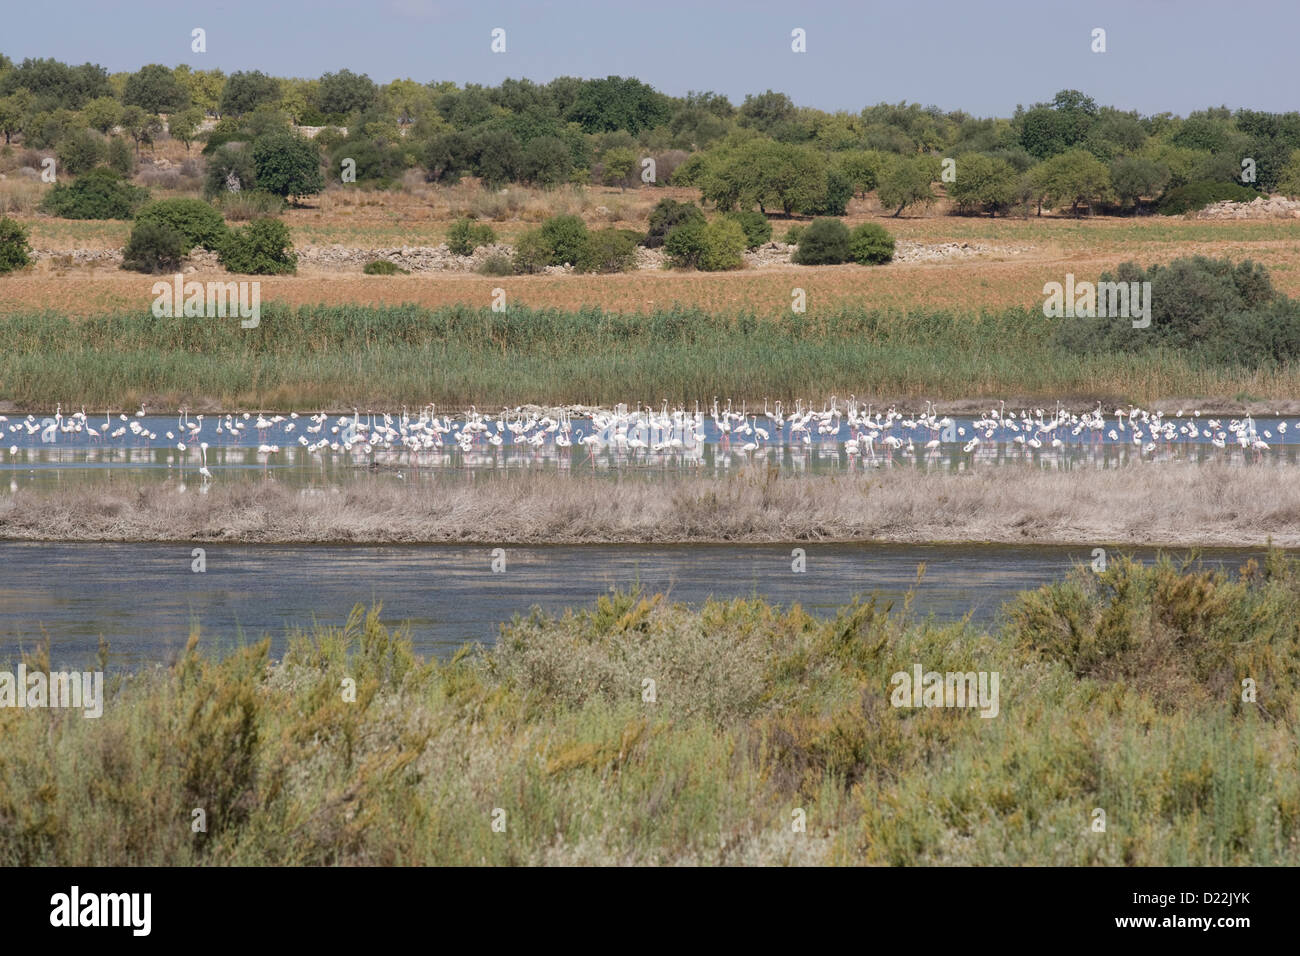 Riserva Naturale Oasi Faunistica di Vendicari: Pantano Roveto - flamingo colony Stock Photo